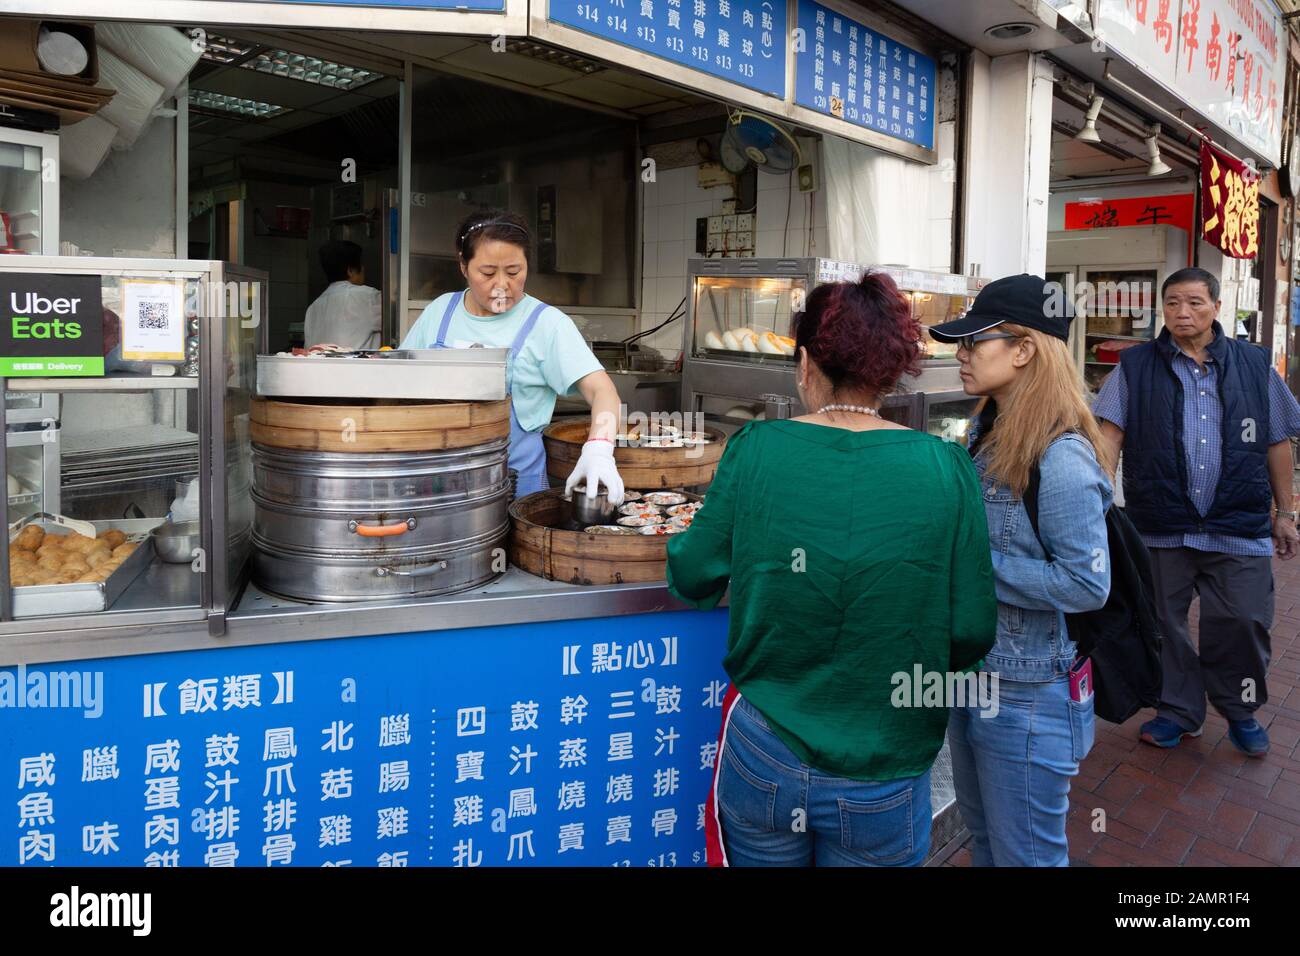 Cuisine de rue en Asie; les gens qui achètent de la nourriture dans un stand de rue, Kowloon, Hong Kong Asie - exemple de style de vie asiatique Banque D'Images